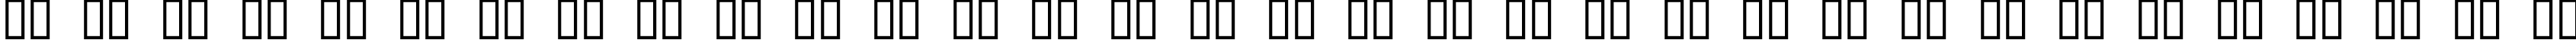 Пример написания русского алфавита шрифтом DexterC